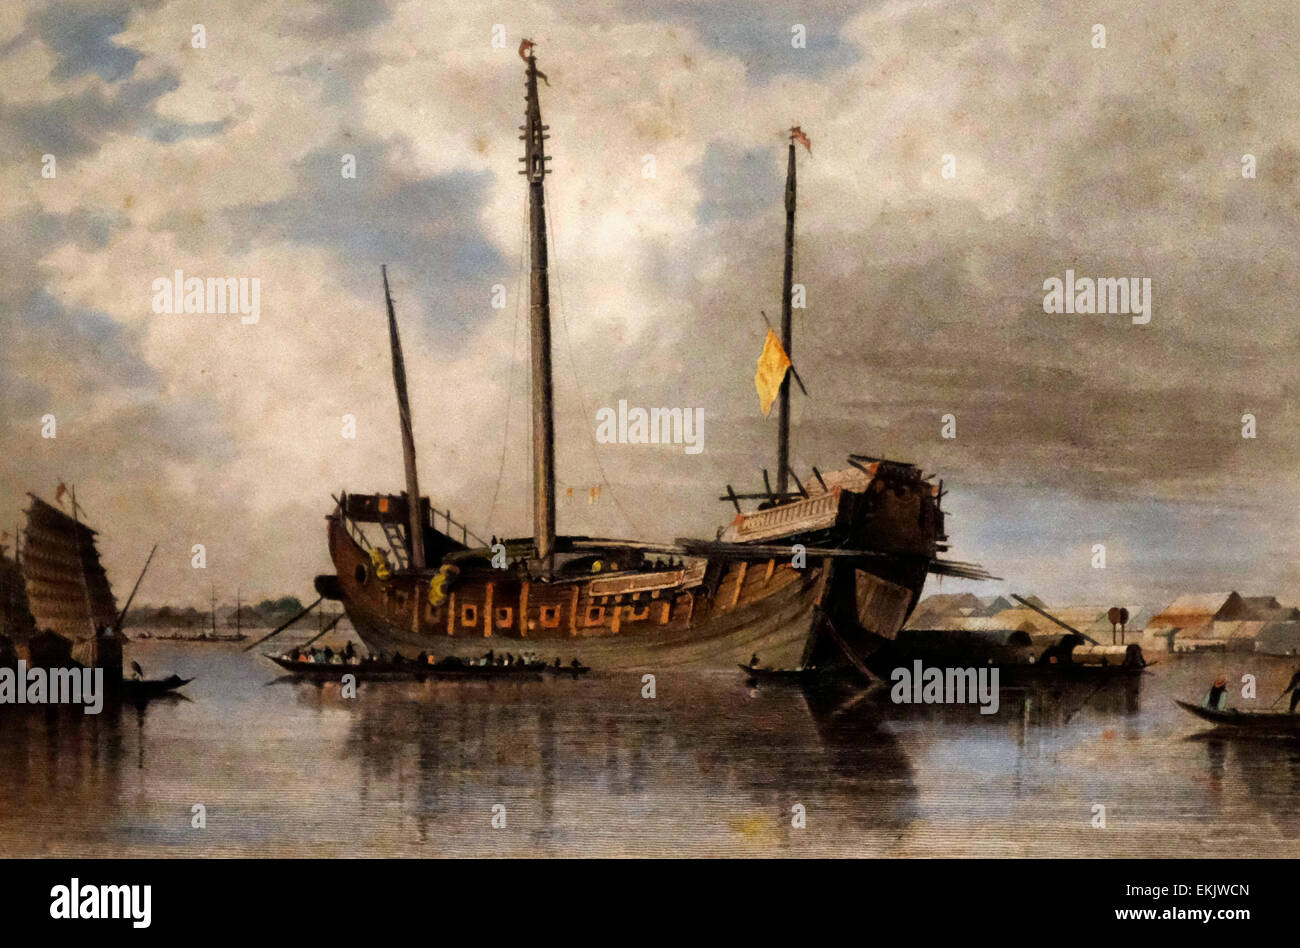 Une jonque chinoise sur la rivière de Canton, milieu du 19ème siècle Banque D'Images